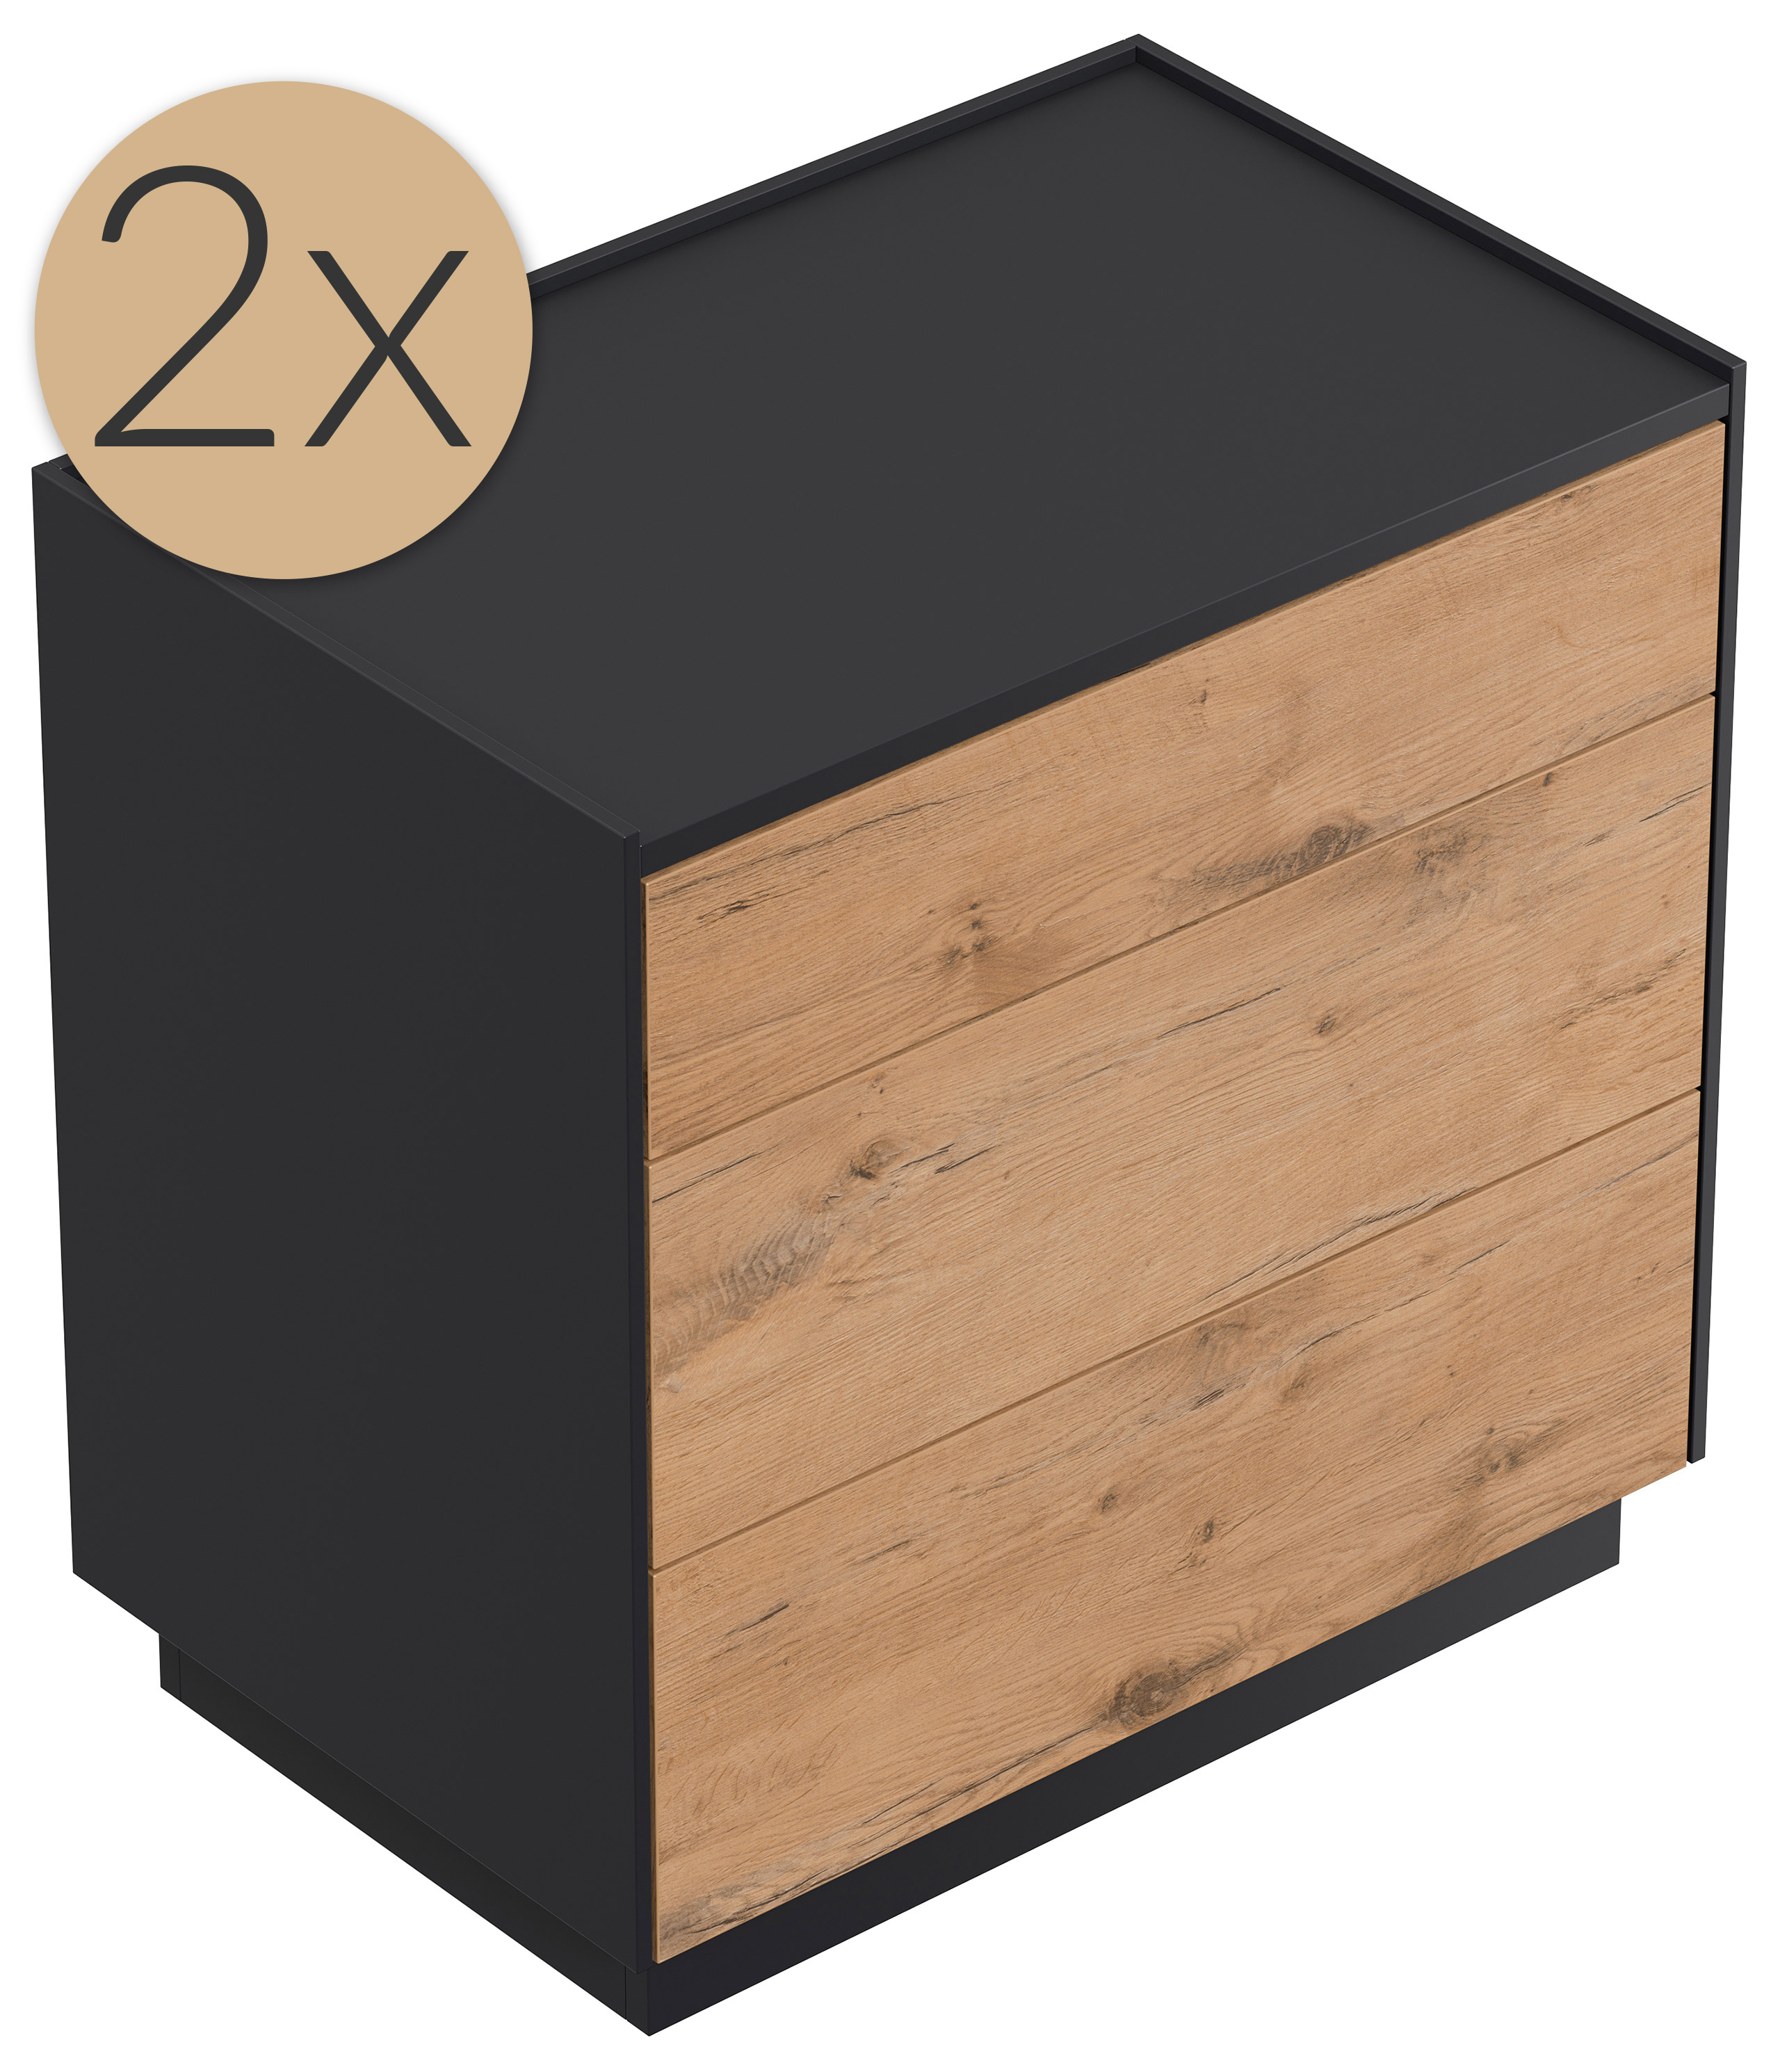 2er Set Nachttisch Kommode Lux XL 70cm, 3 Pushauszüge Oak für Boxspringbett